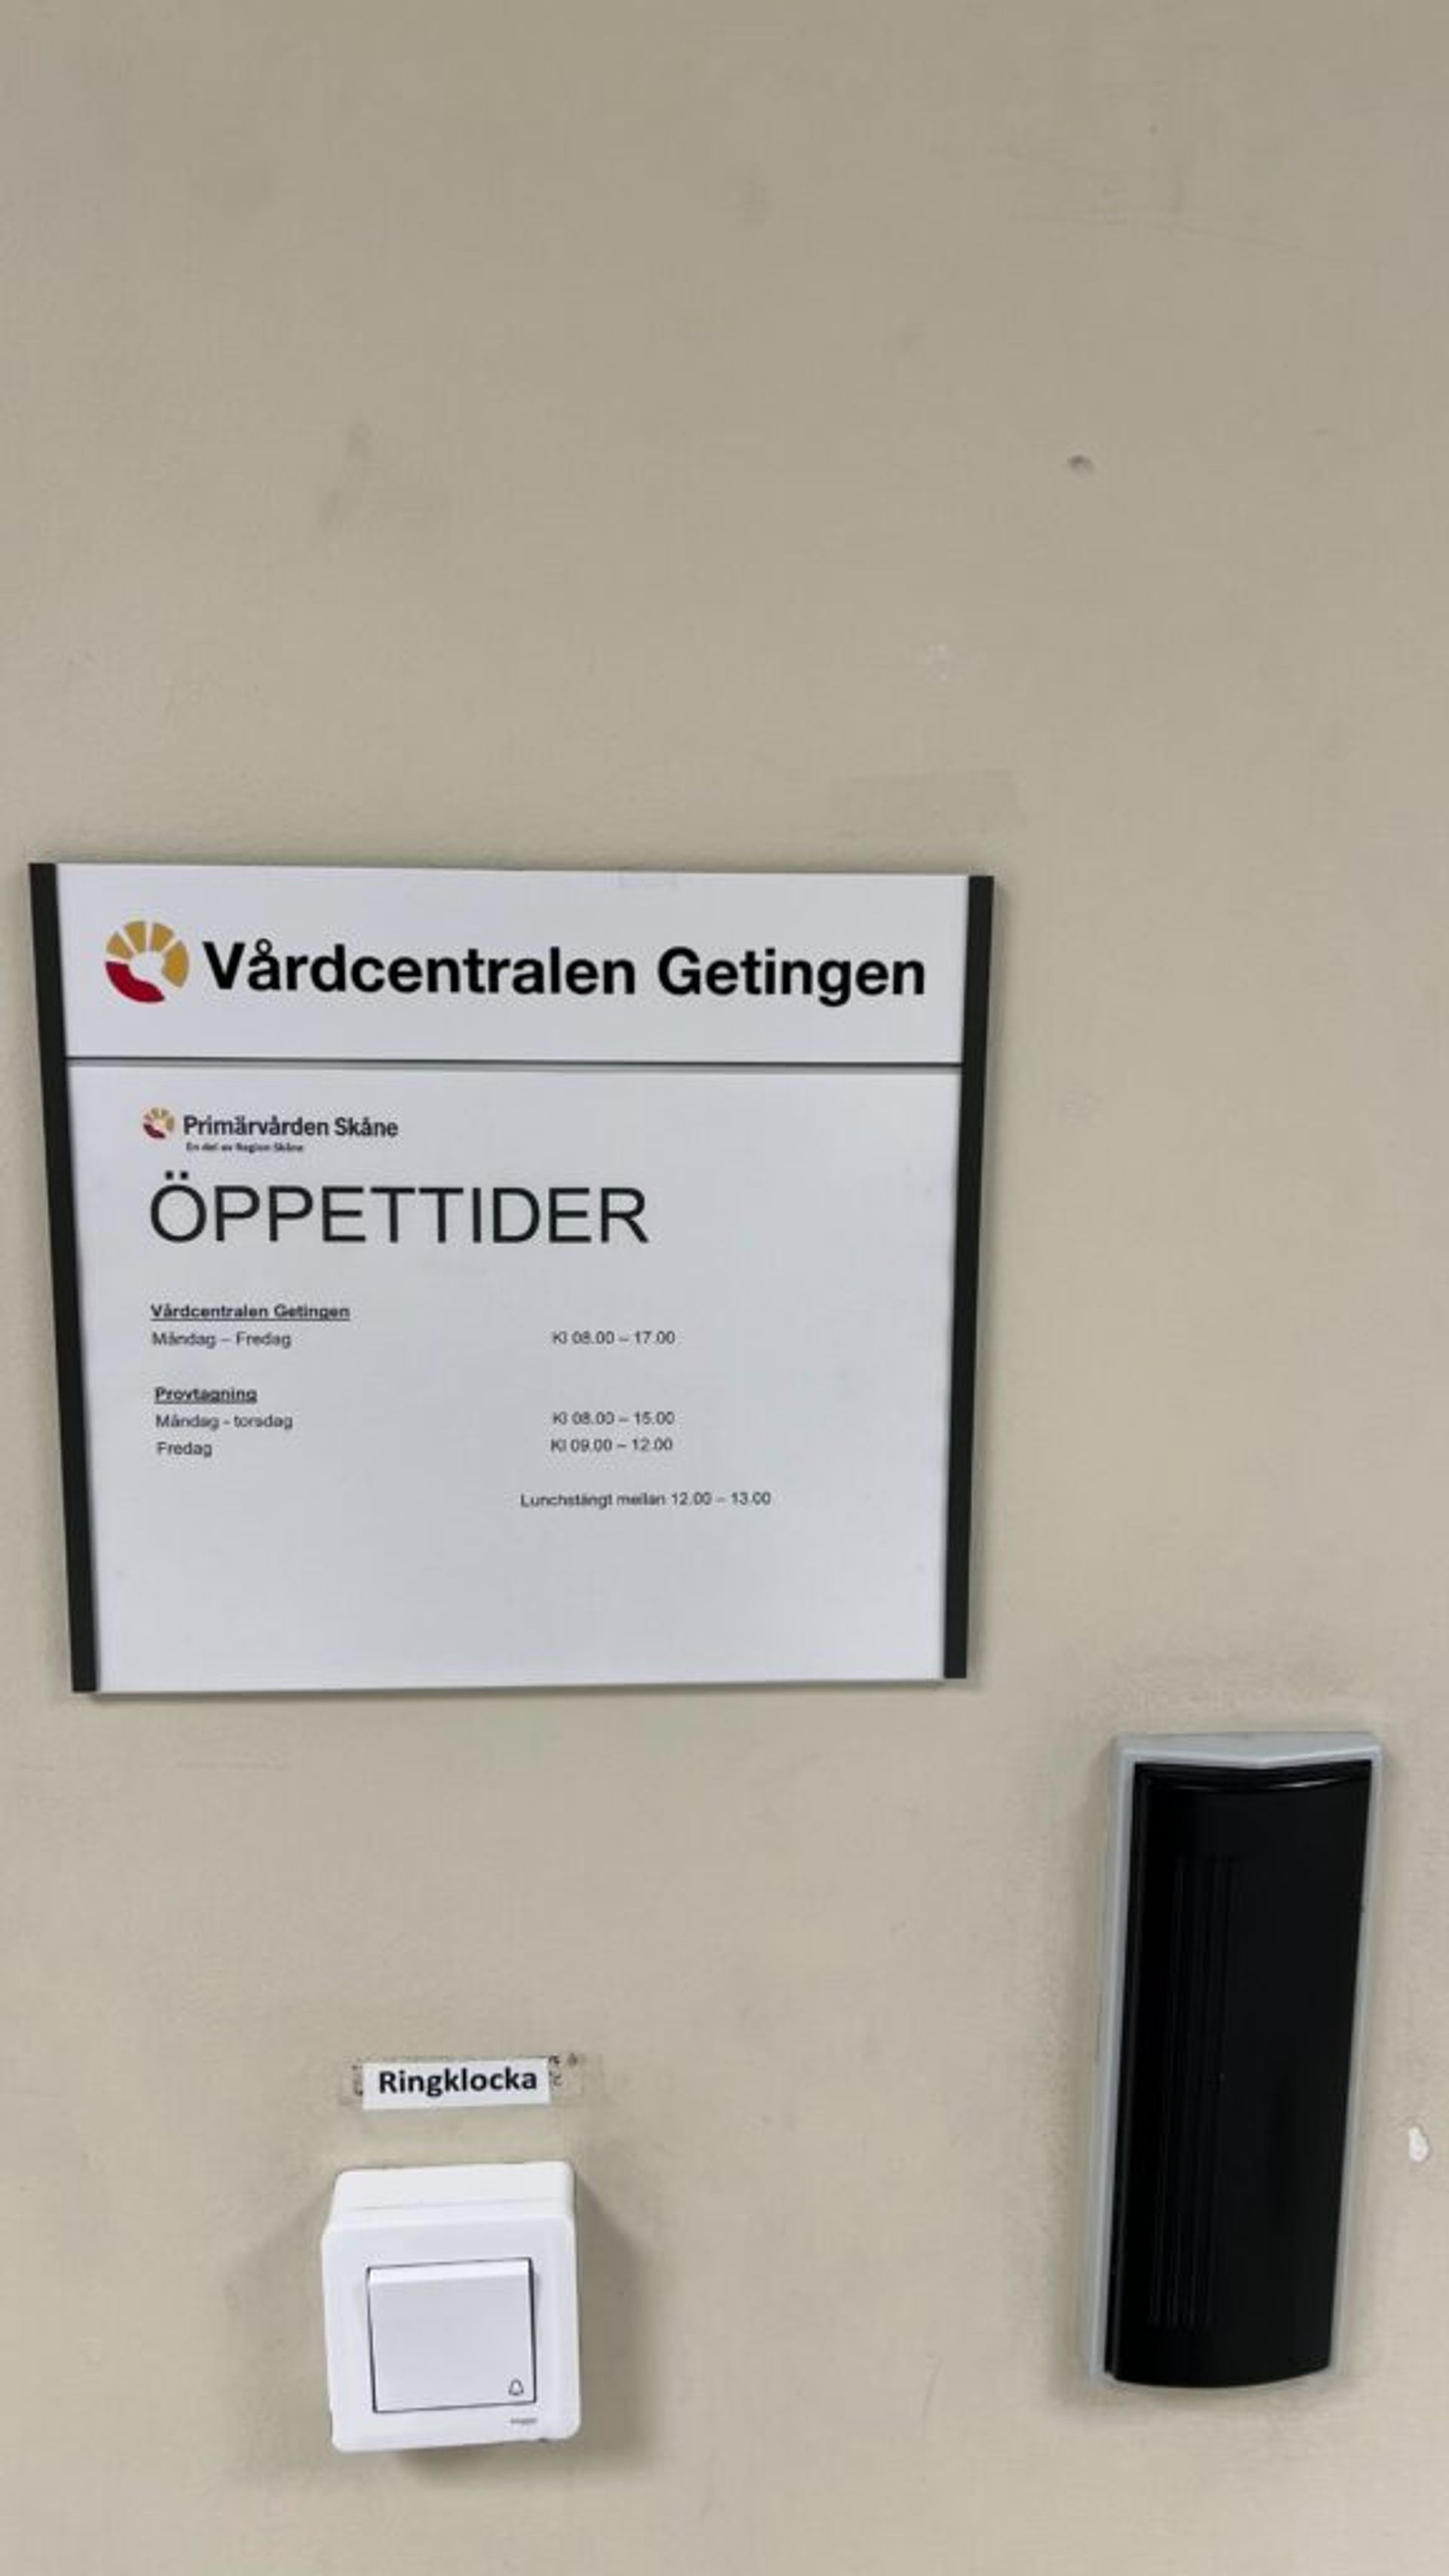 A sign displaying the hospital's opening hours at Primärvården Skåne.